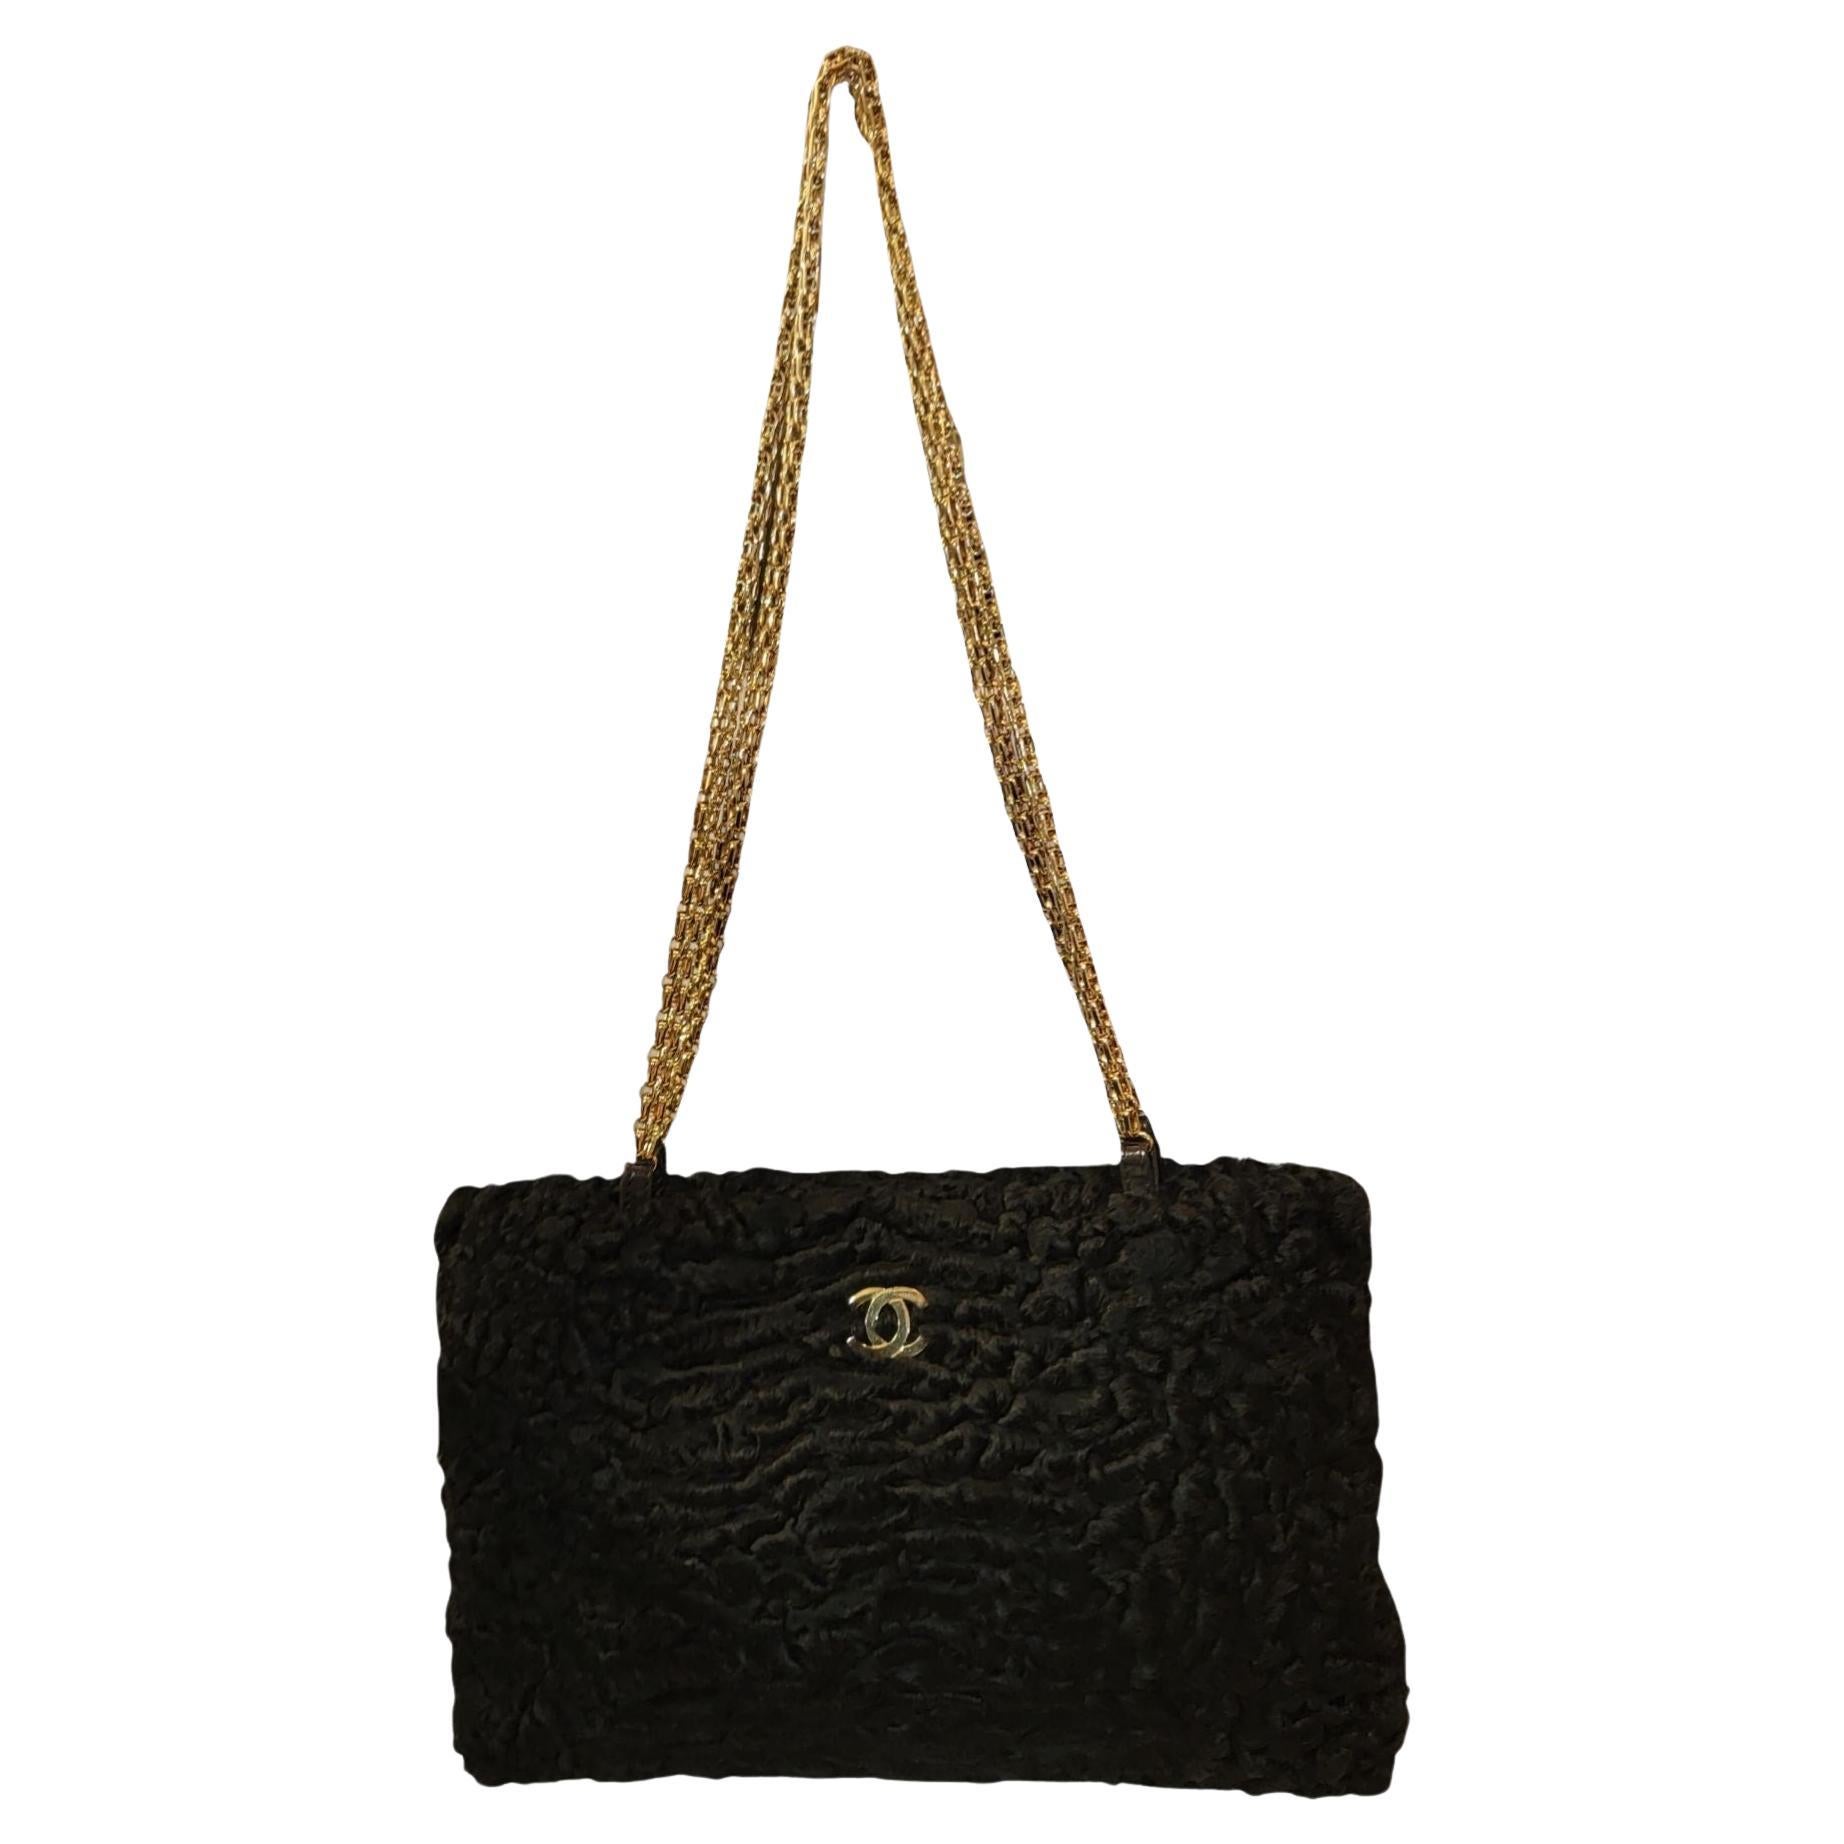 Chanel - Rare sac à main en peau d'agneau exotique persan - Pochette - Noir